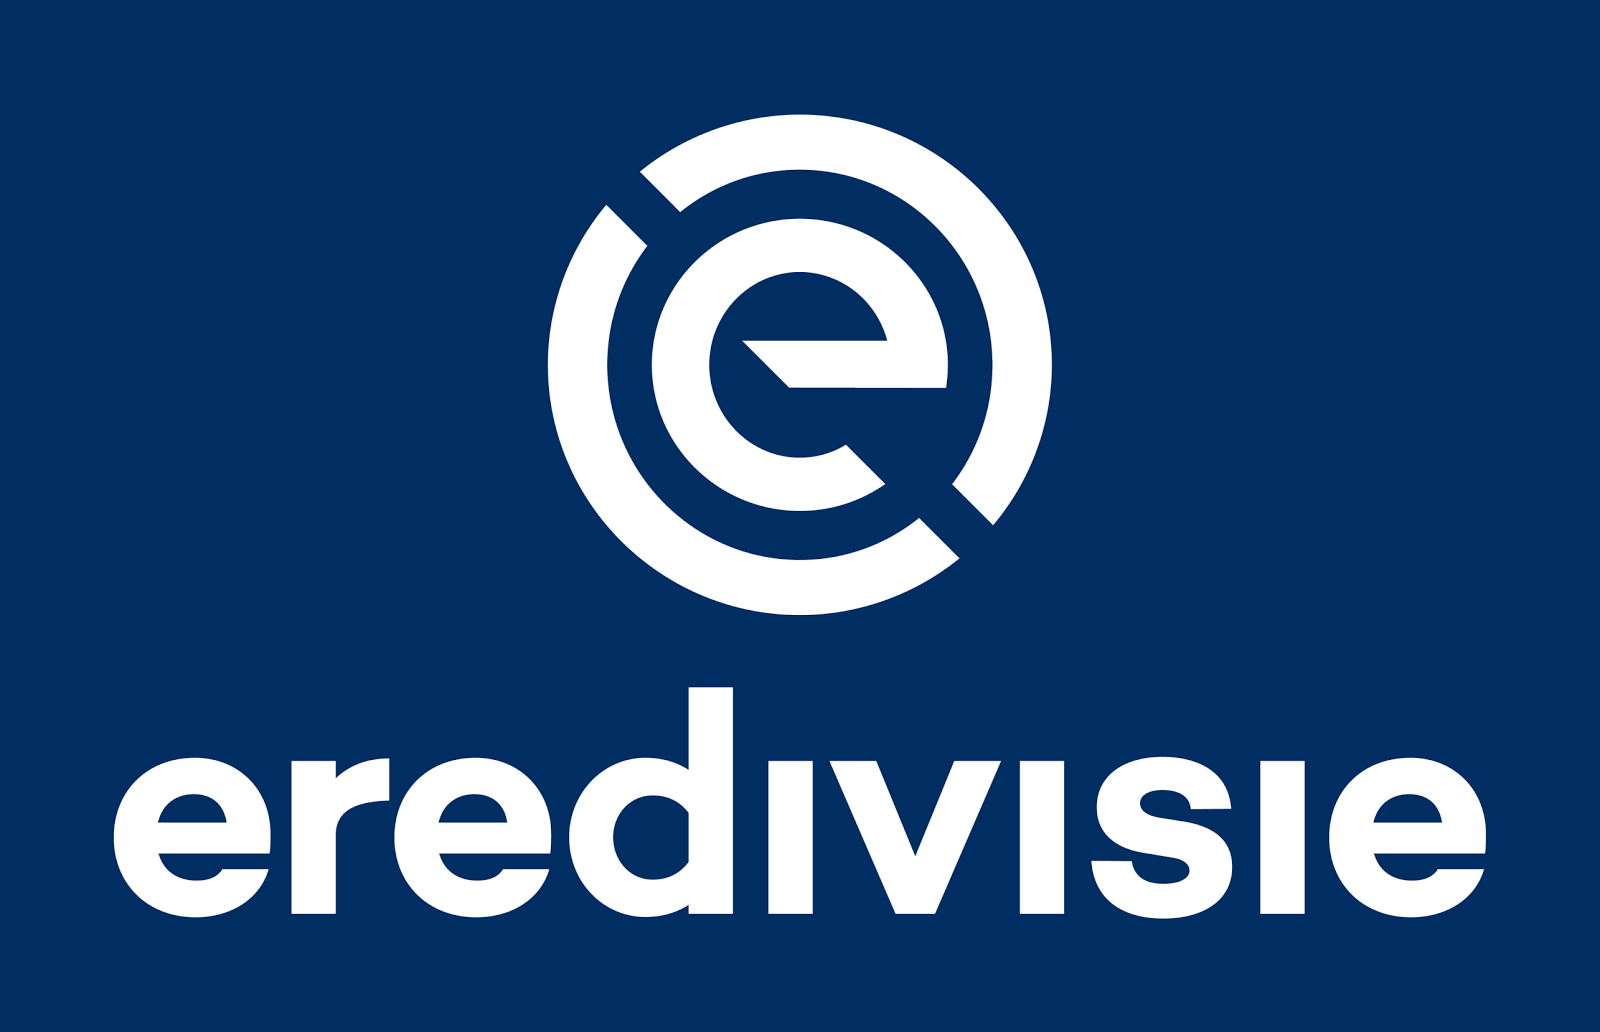 all-new-eredivisie-logo%2B%25283%2529.pn